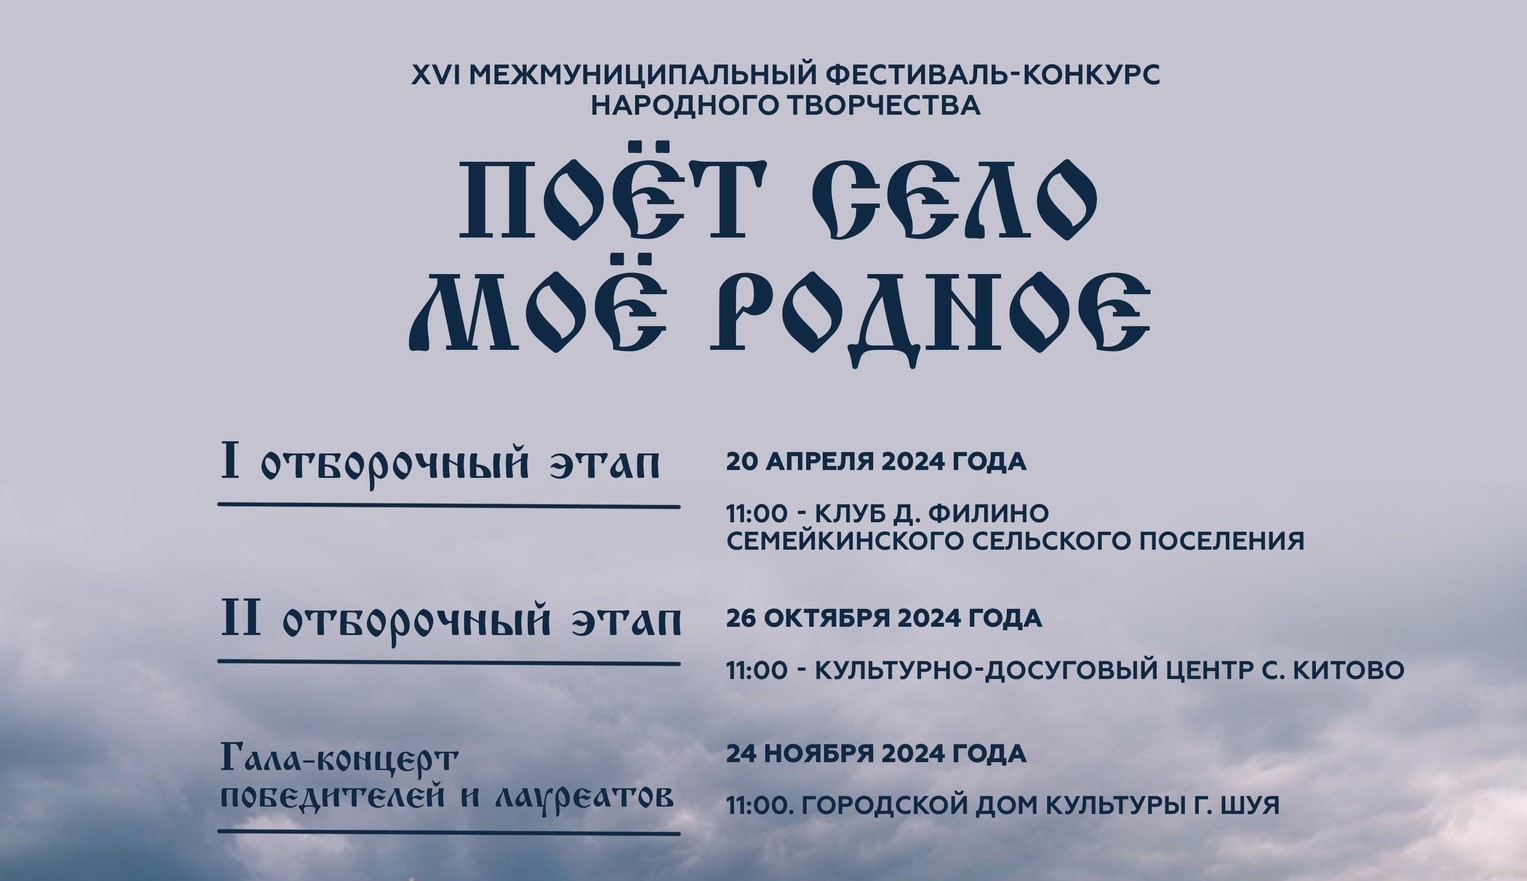 Жители Ивановской области могут поучаствовать в фестивале "Поет село мое родное"